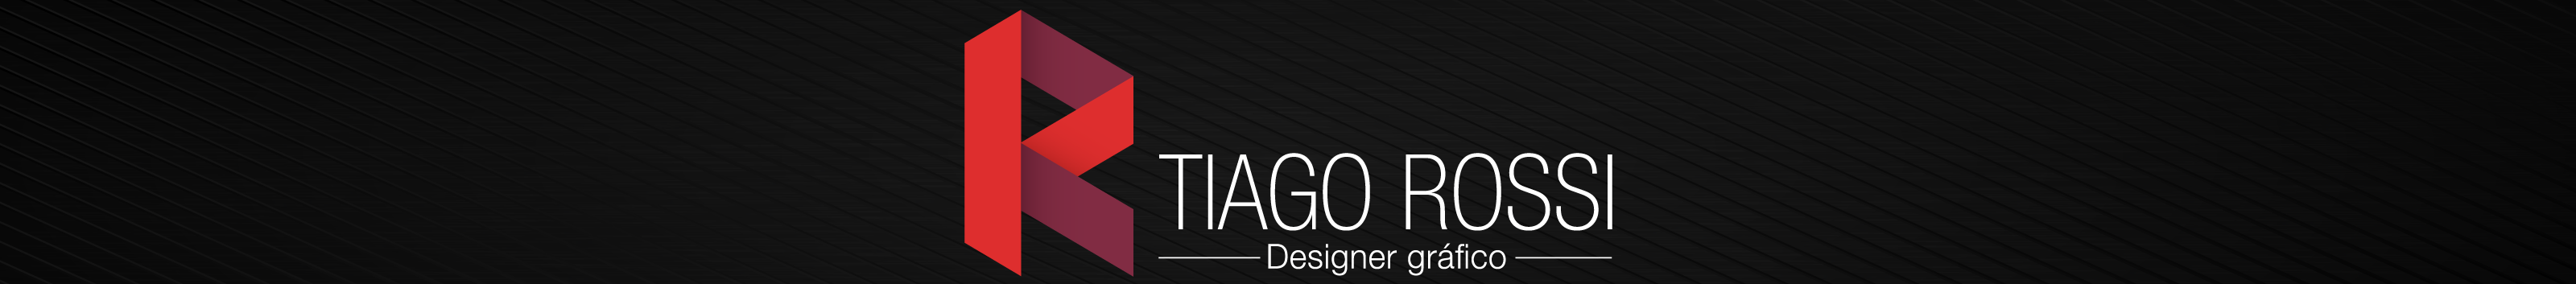 Banner profilu uživatele Tiago Rossi